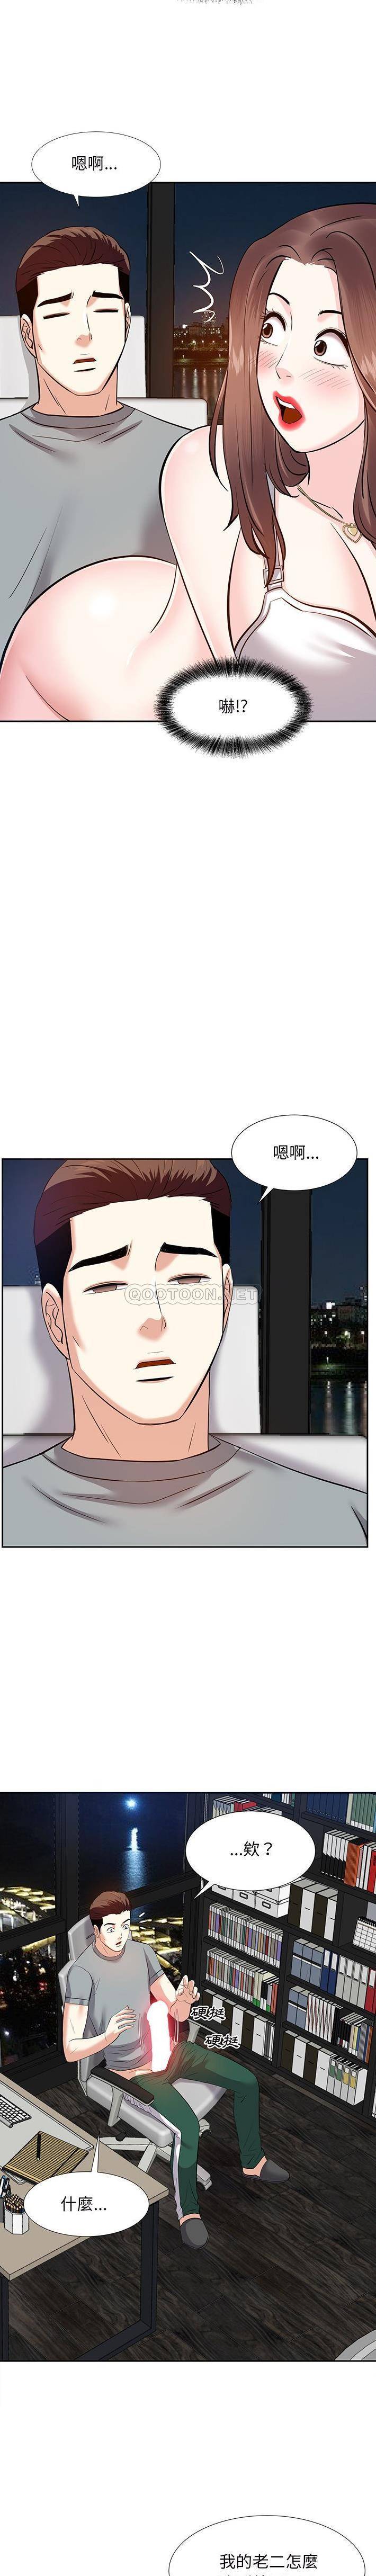 韩国污漫画 甜心幹爹 第9话 18